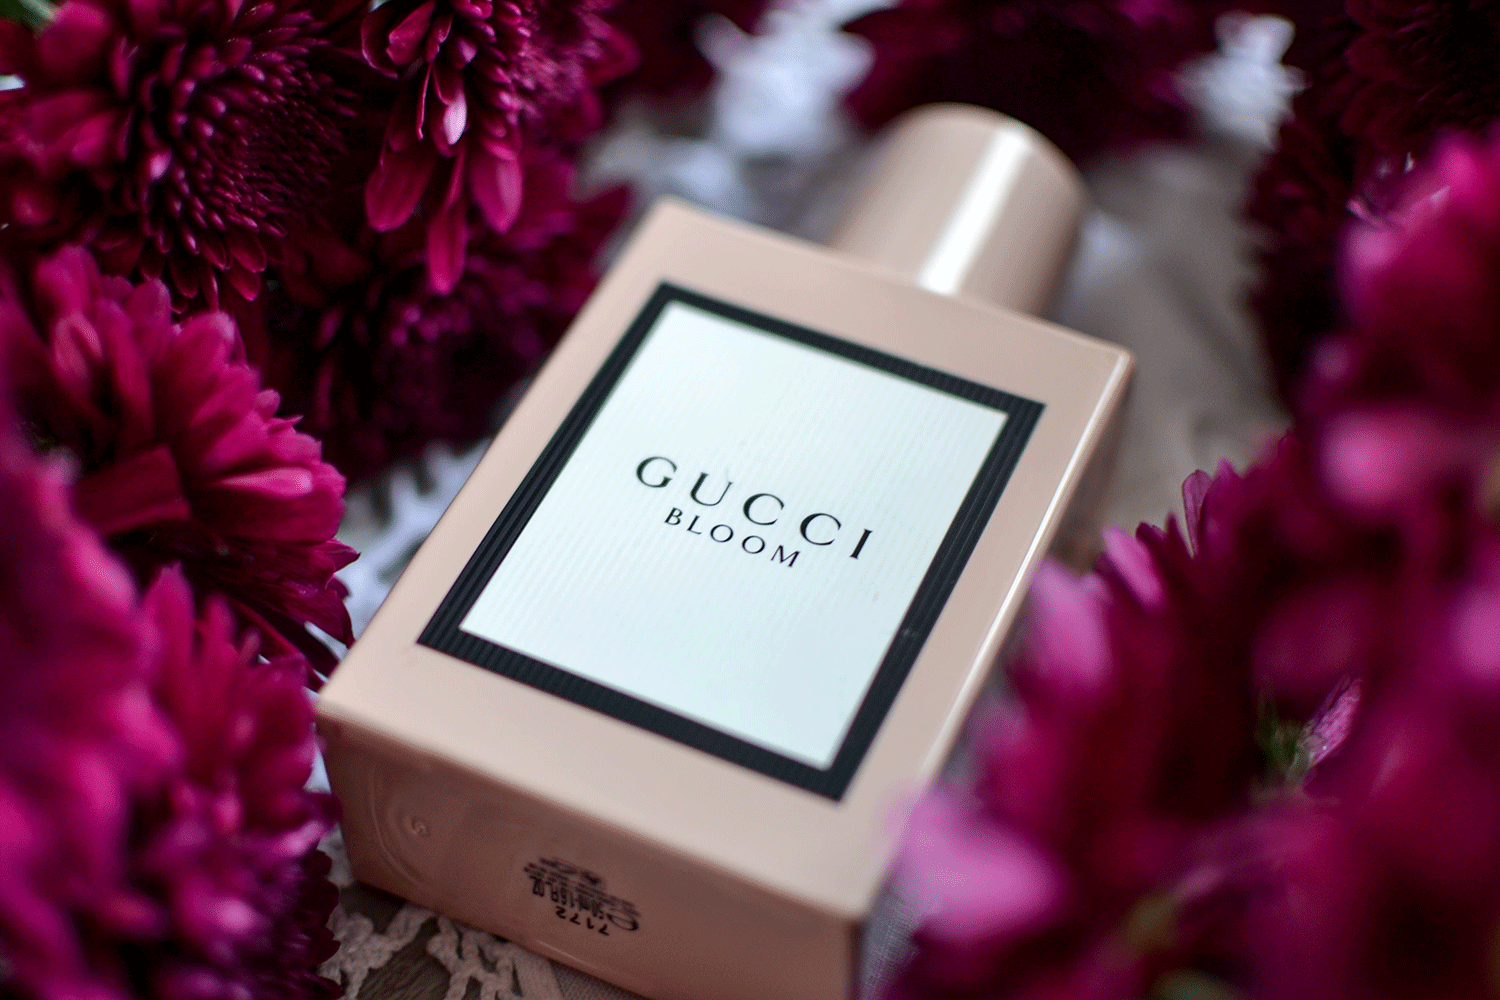 Lieblingsduft❤️ #parfum #favorite #beauty #gucci